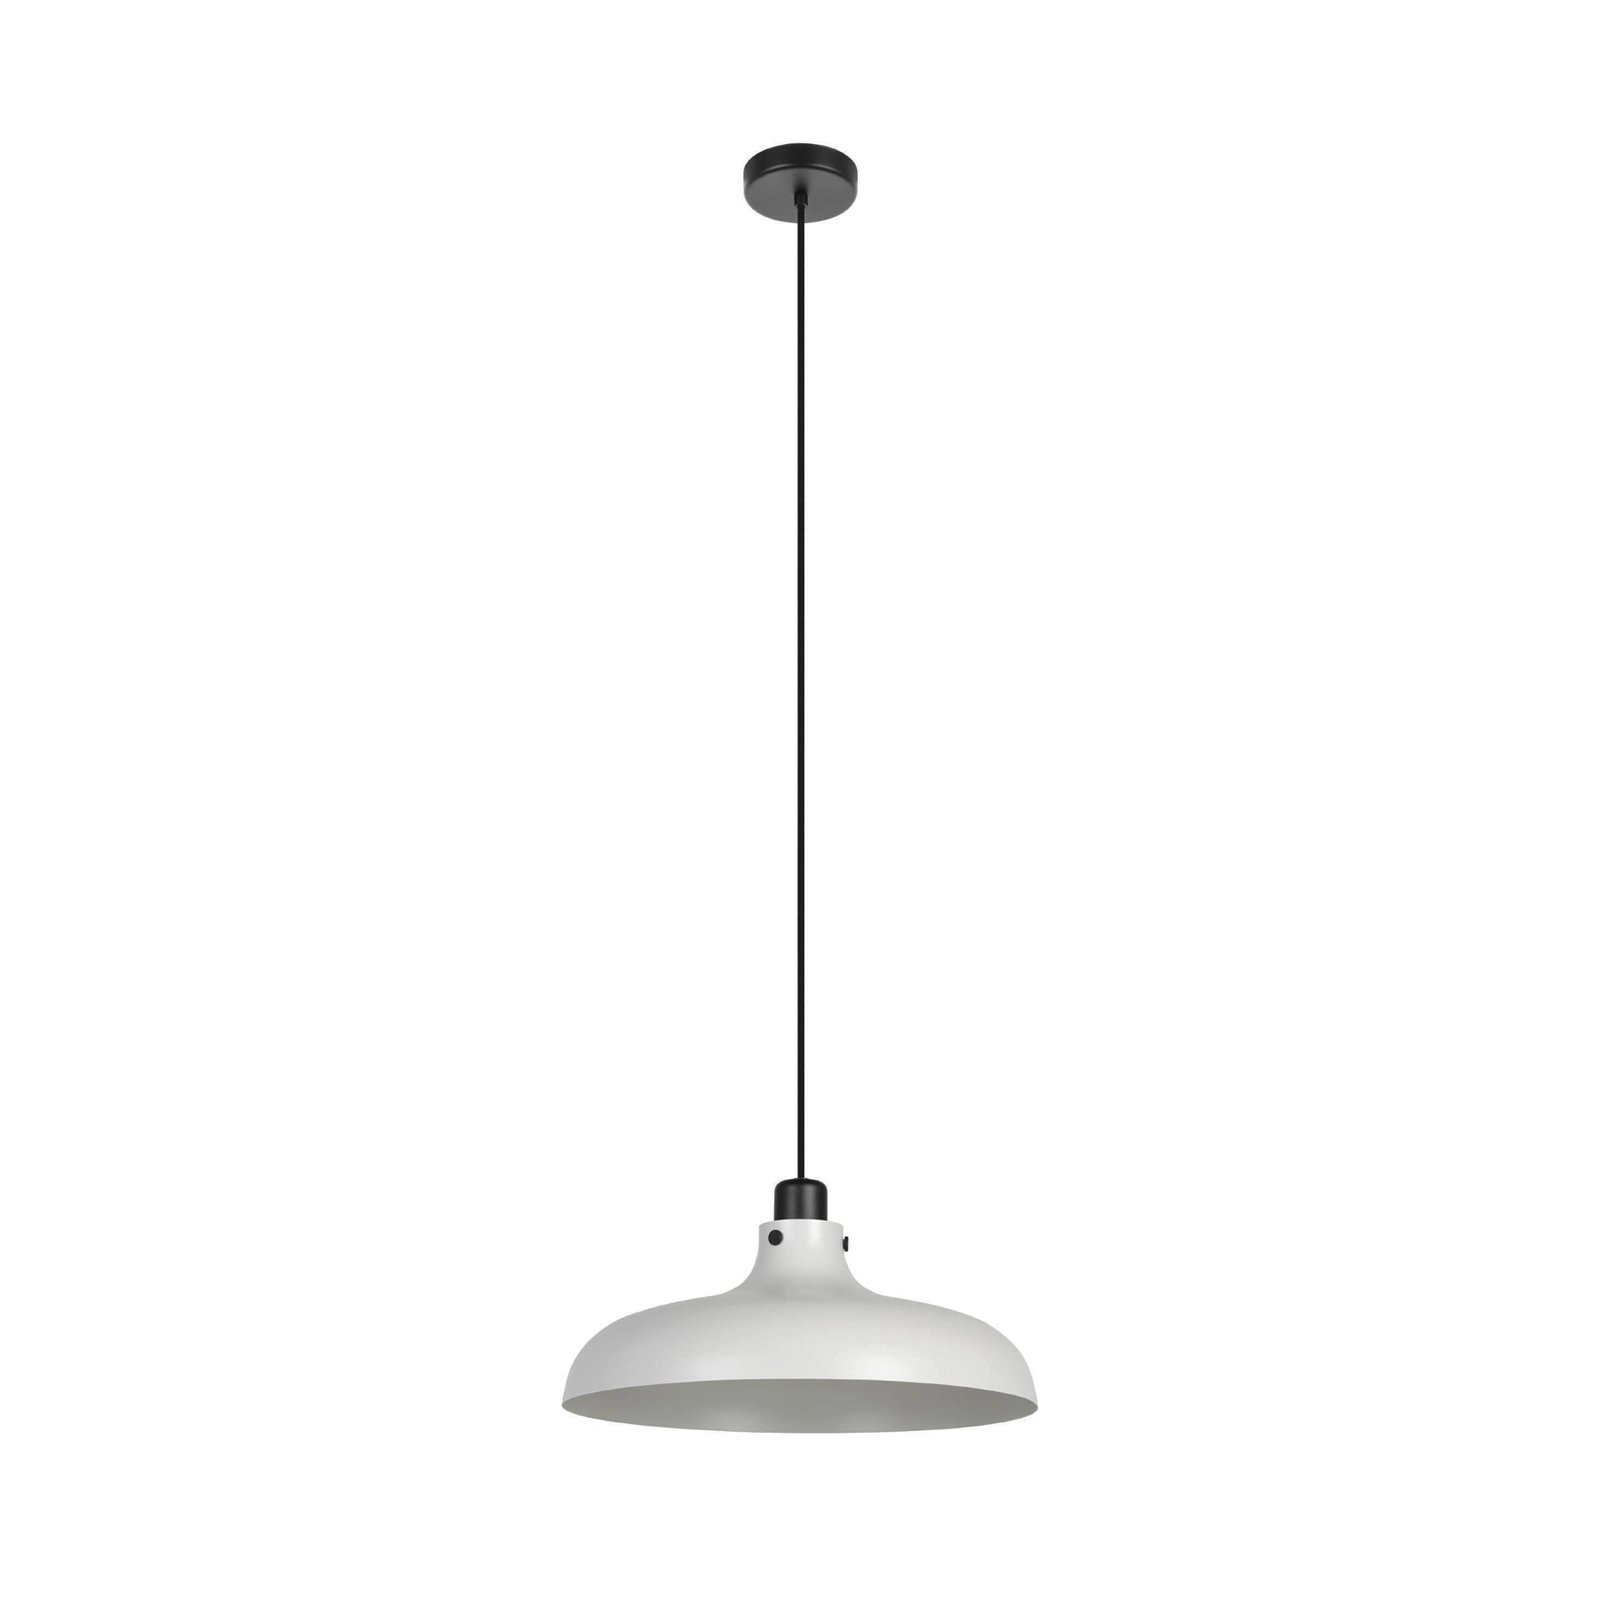 Matlock hængelampe, Ø 38 cm, grå/sort, stål